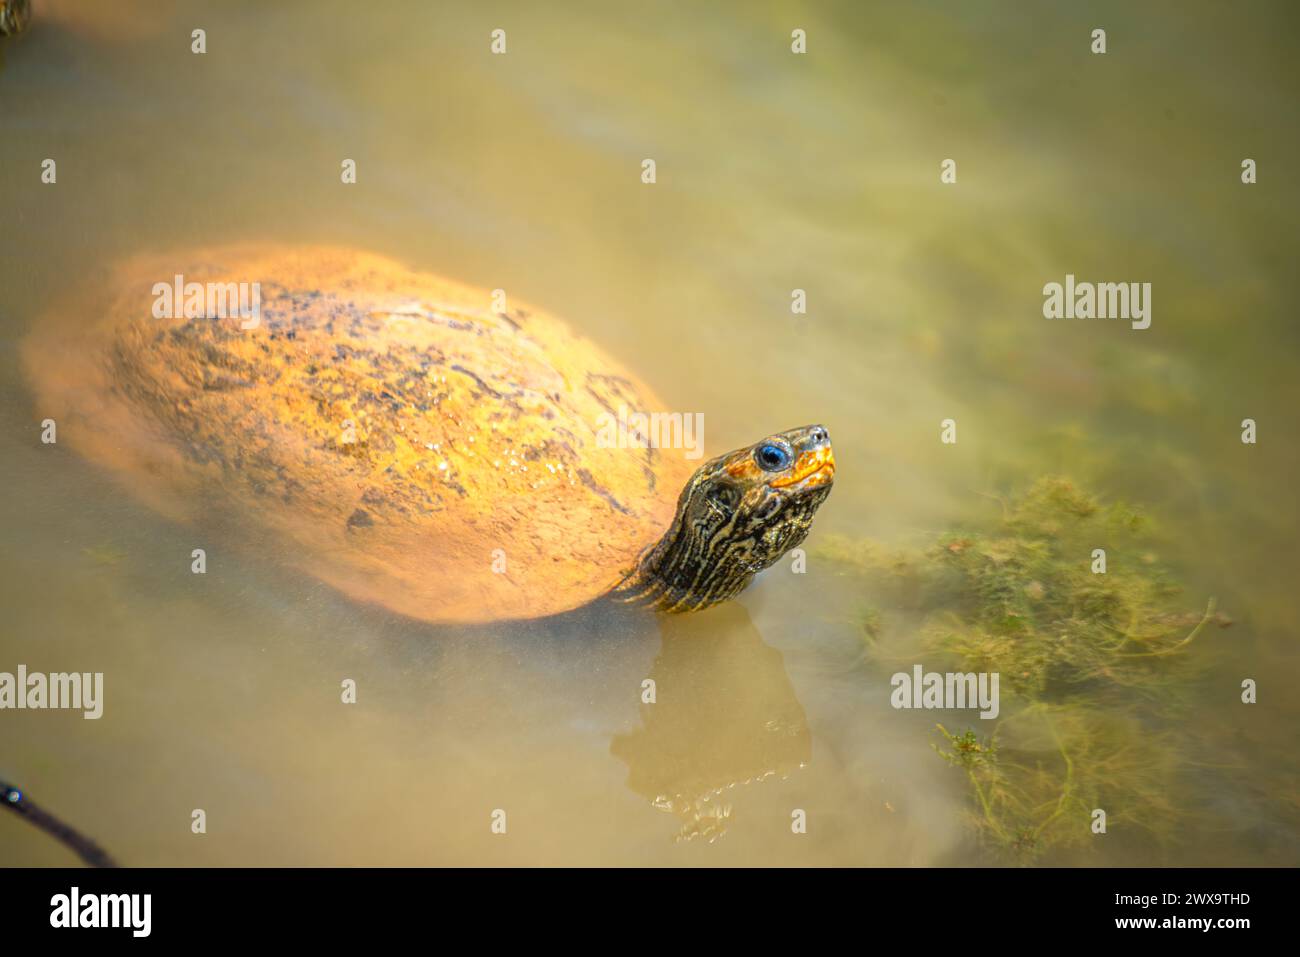 Un momento grazioso si dispiega mentre una tartaruga rivuleto Mauremys scivola pacificamente attraverso acque calme, mostrando la bellezza della vita acquatica. Foto Stock